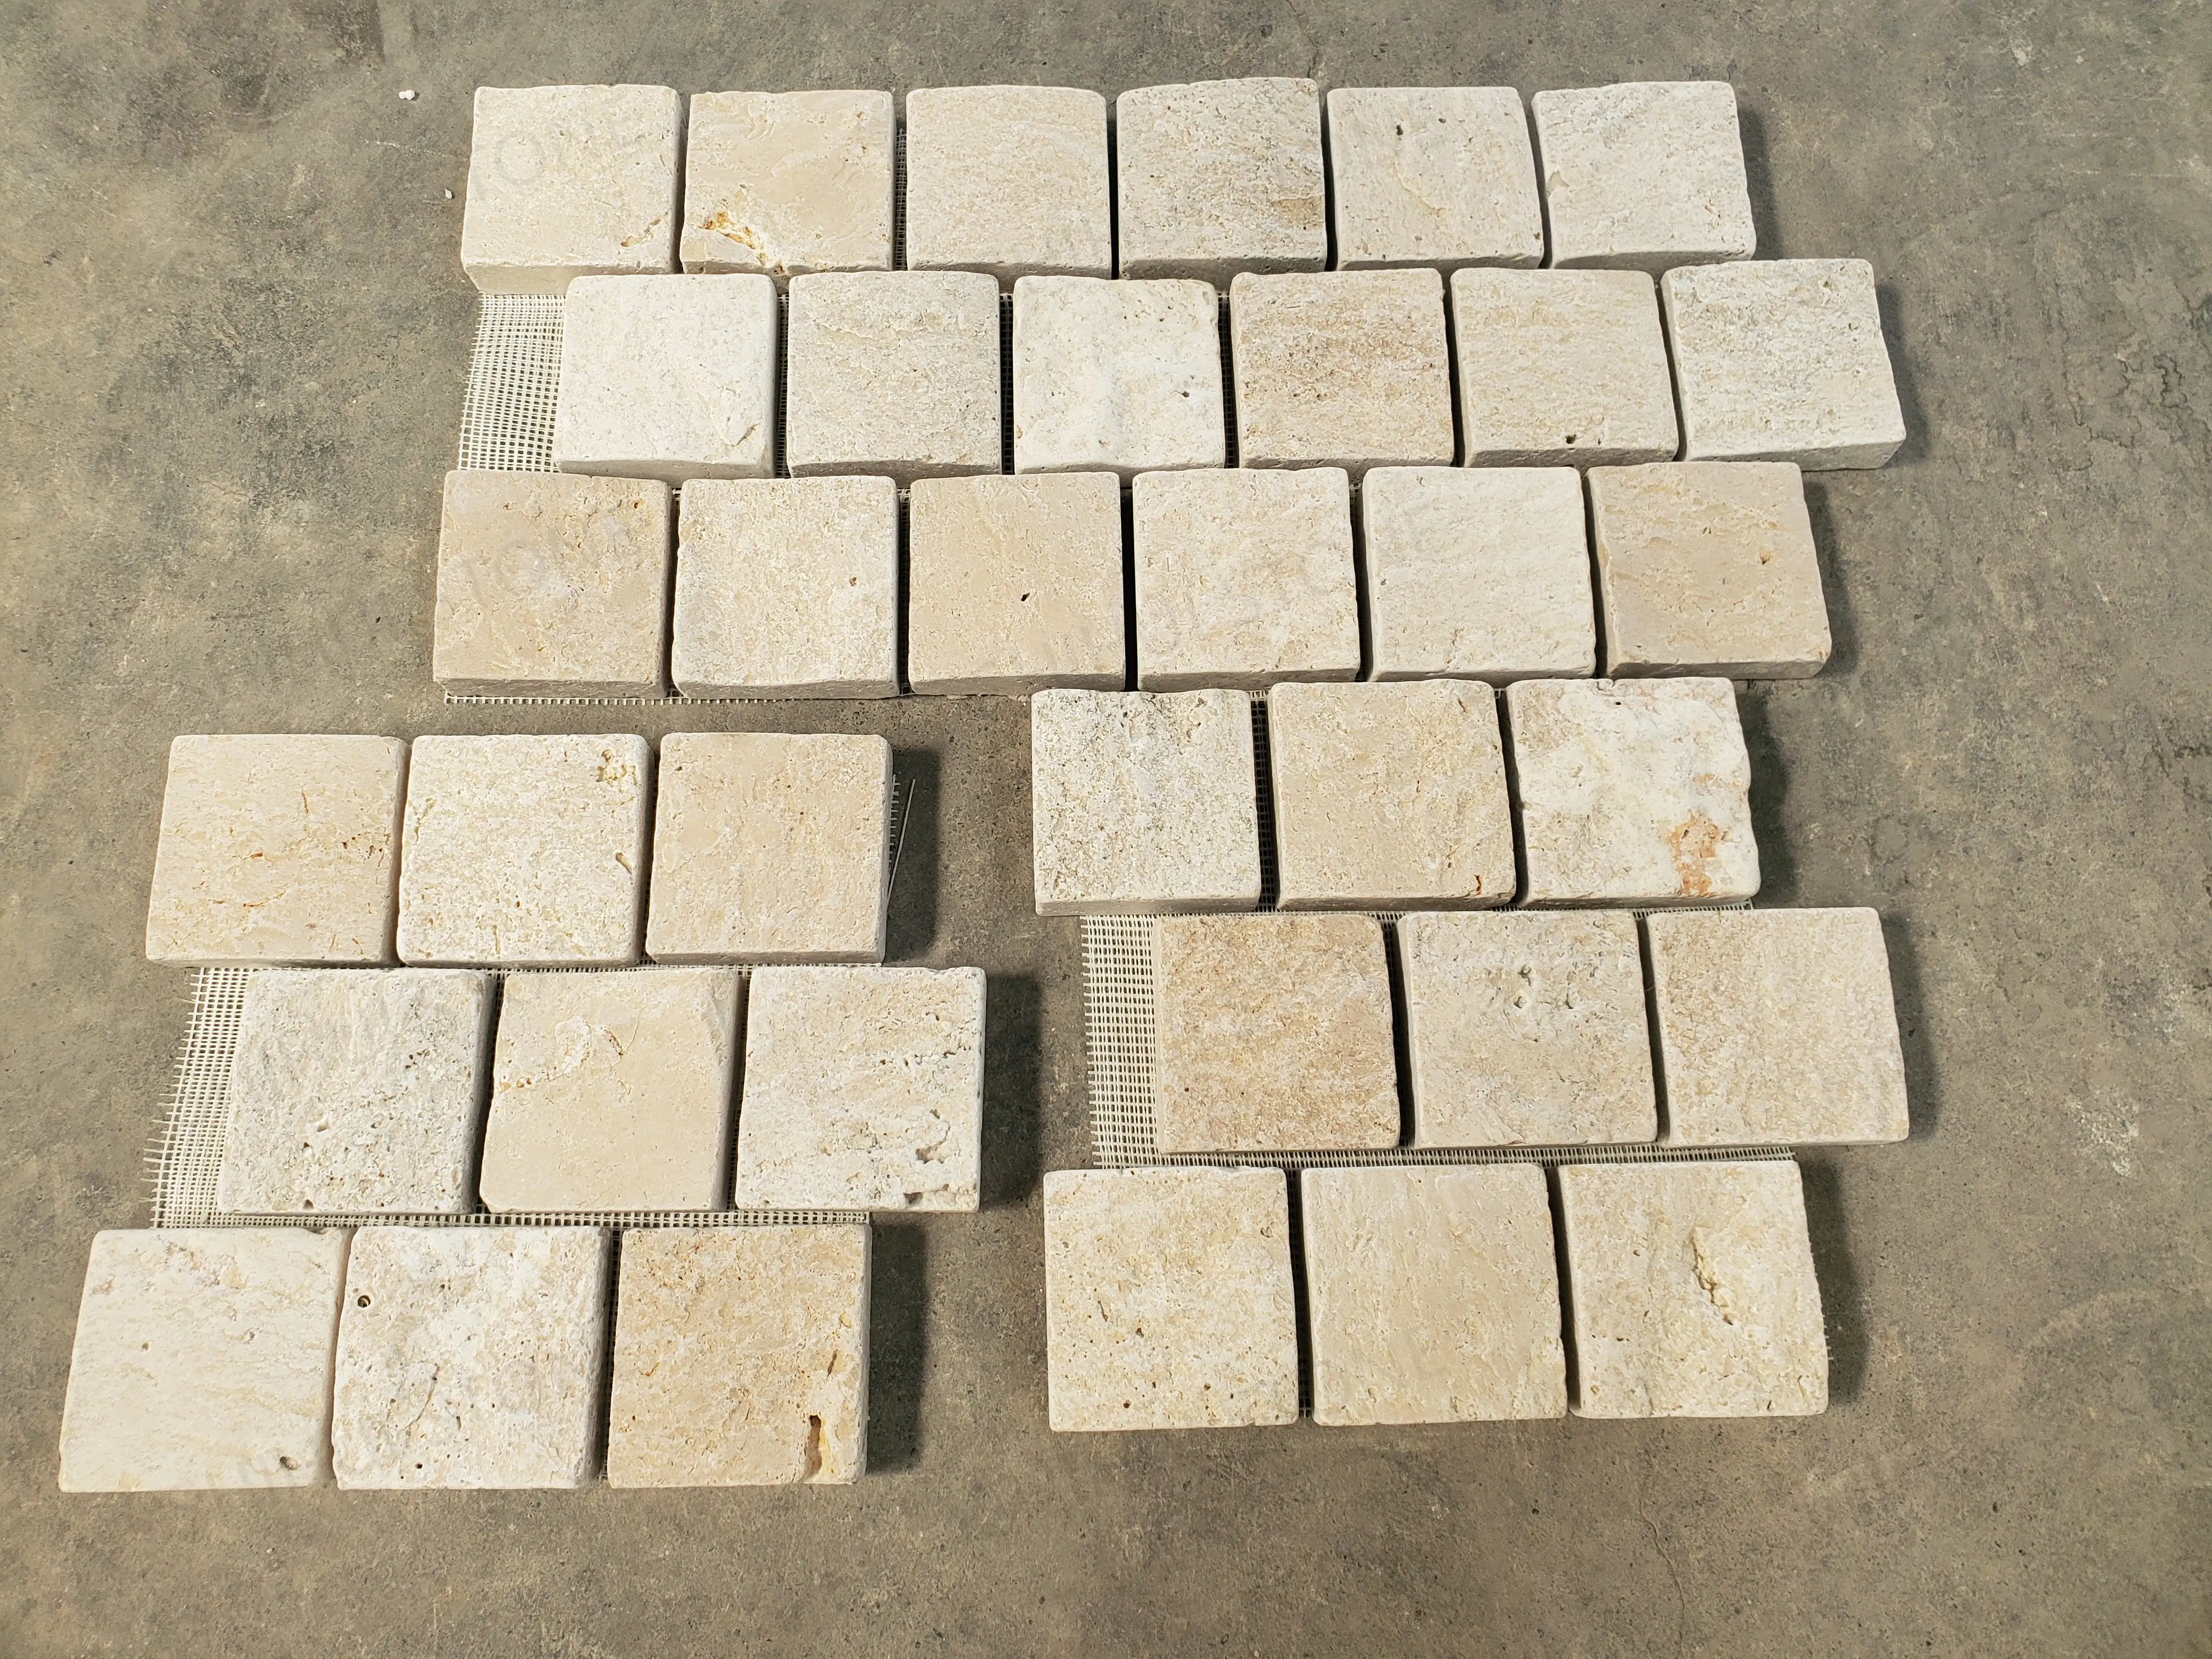 SHIHUI للبيع بالجملة لاط من الحجر الجيري الطبيعي وحجر الترافرتين بقياس مناسب لتصميم أنتيكة الفيلات والحجارة الرخامية الشبكية الطبيعية